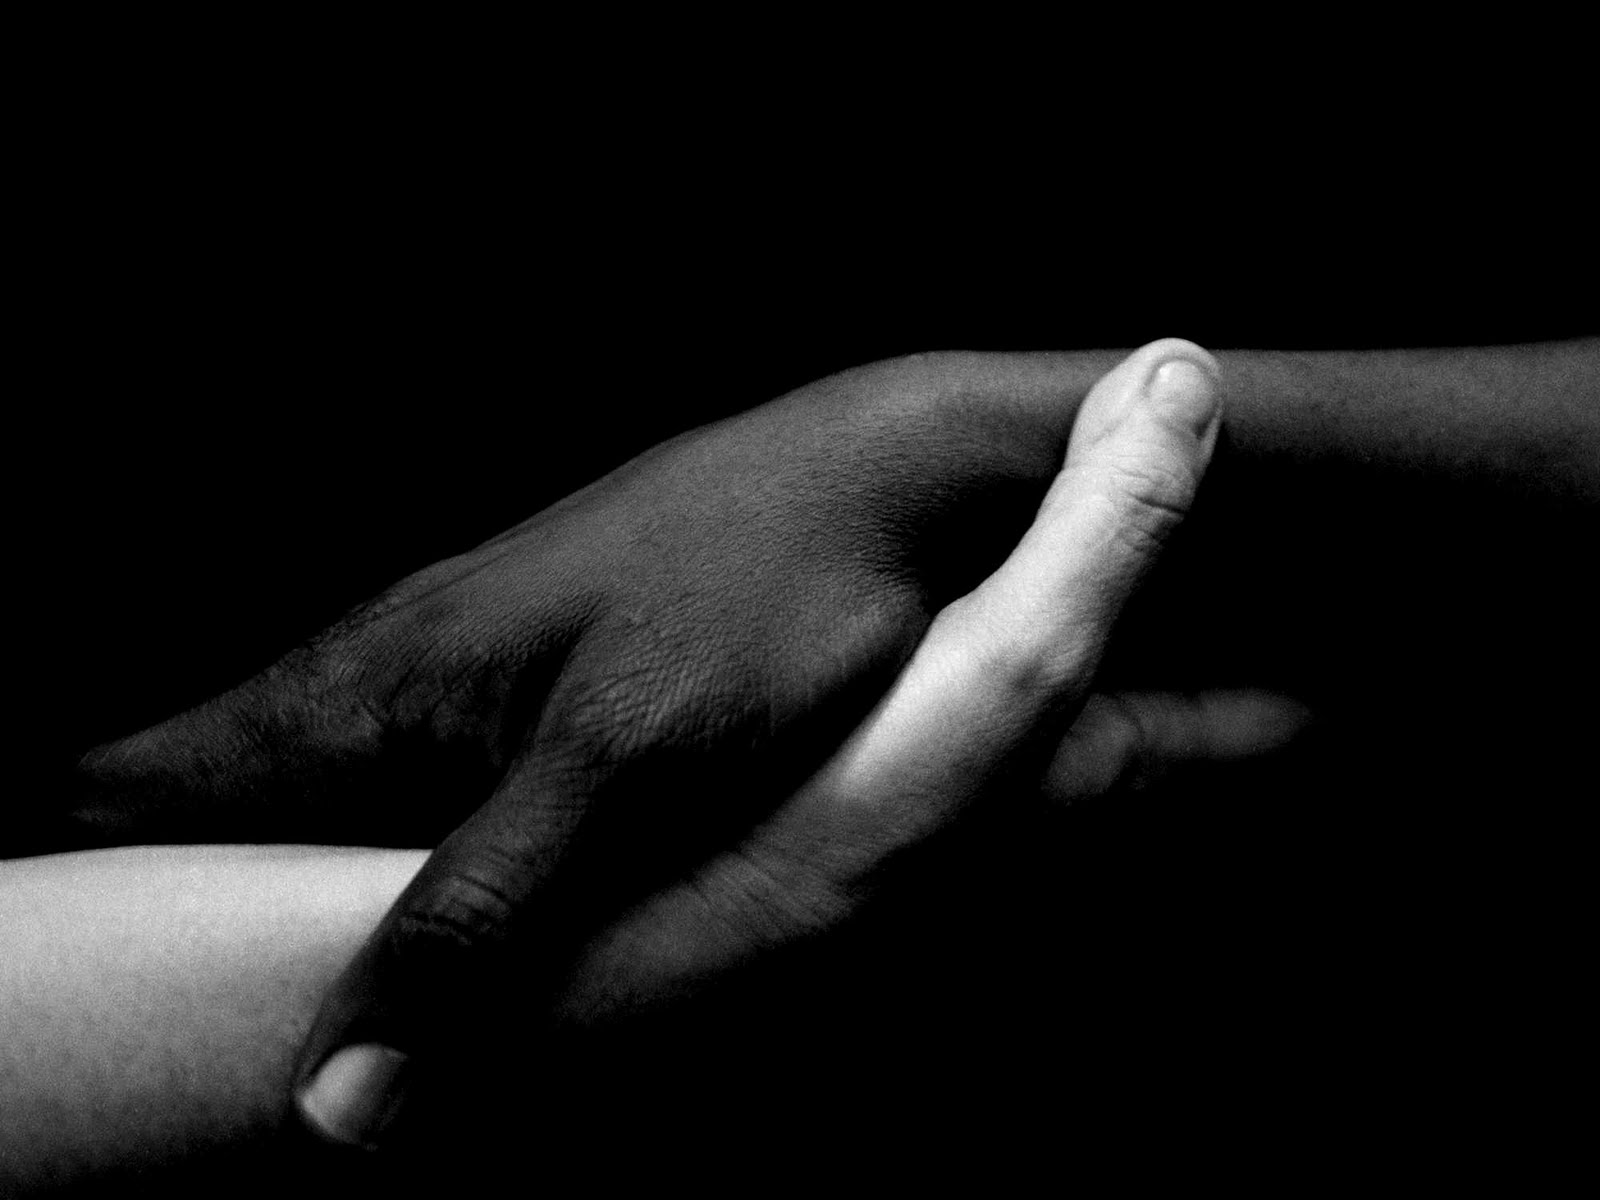 siyah beyaz fondo de pantalla,negro,mano,en blanco y negro,fotografía,humano